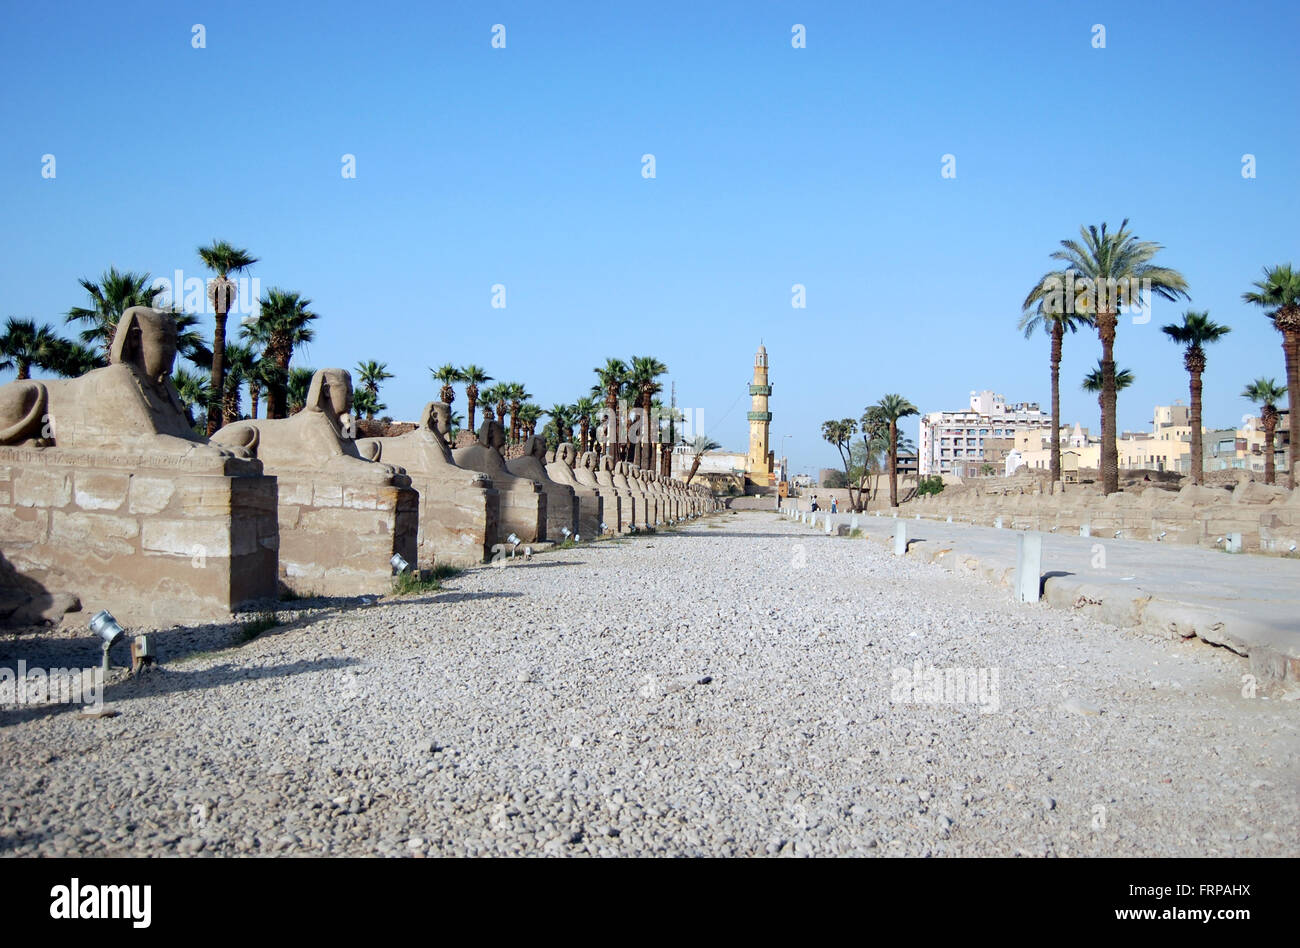 Eine Sphinx-Allee führt zu einer Moschee in Luxor Ägypten und ist von Palmen gesäumt Stockfoto